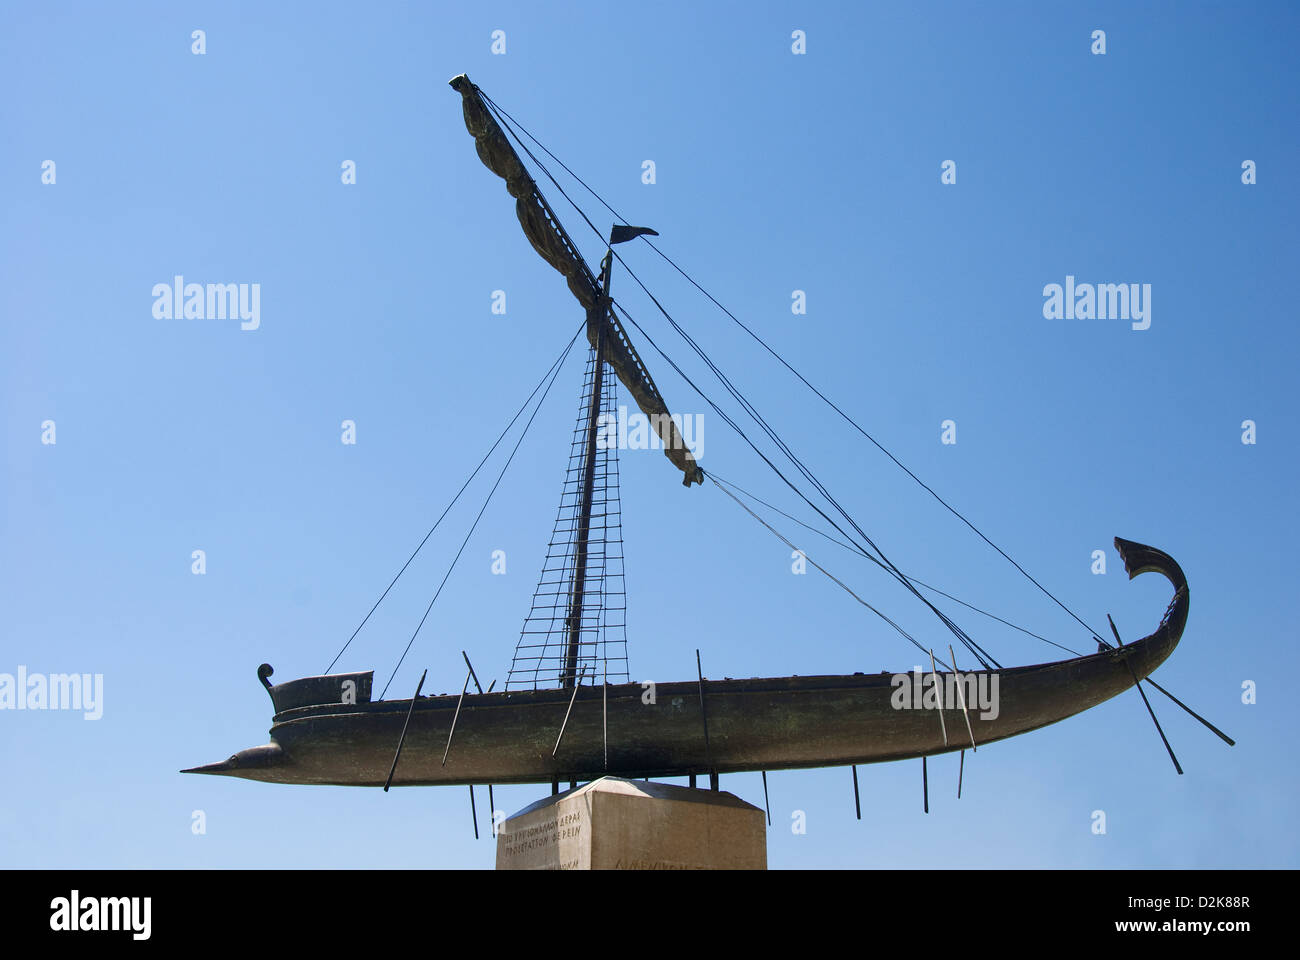 Réplique de l'Argo, le navire des Argonautes dans la mythologie grecque (Volos, Grèce, Thessalie) Banque D'Images